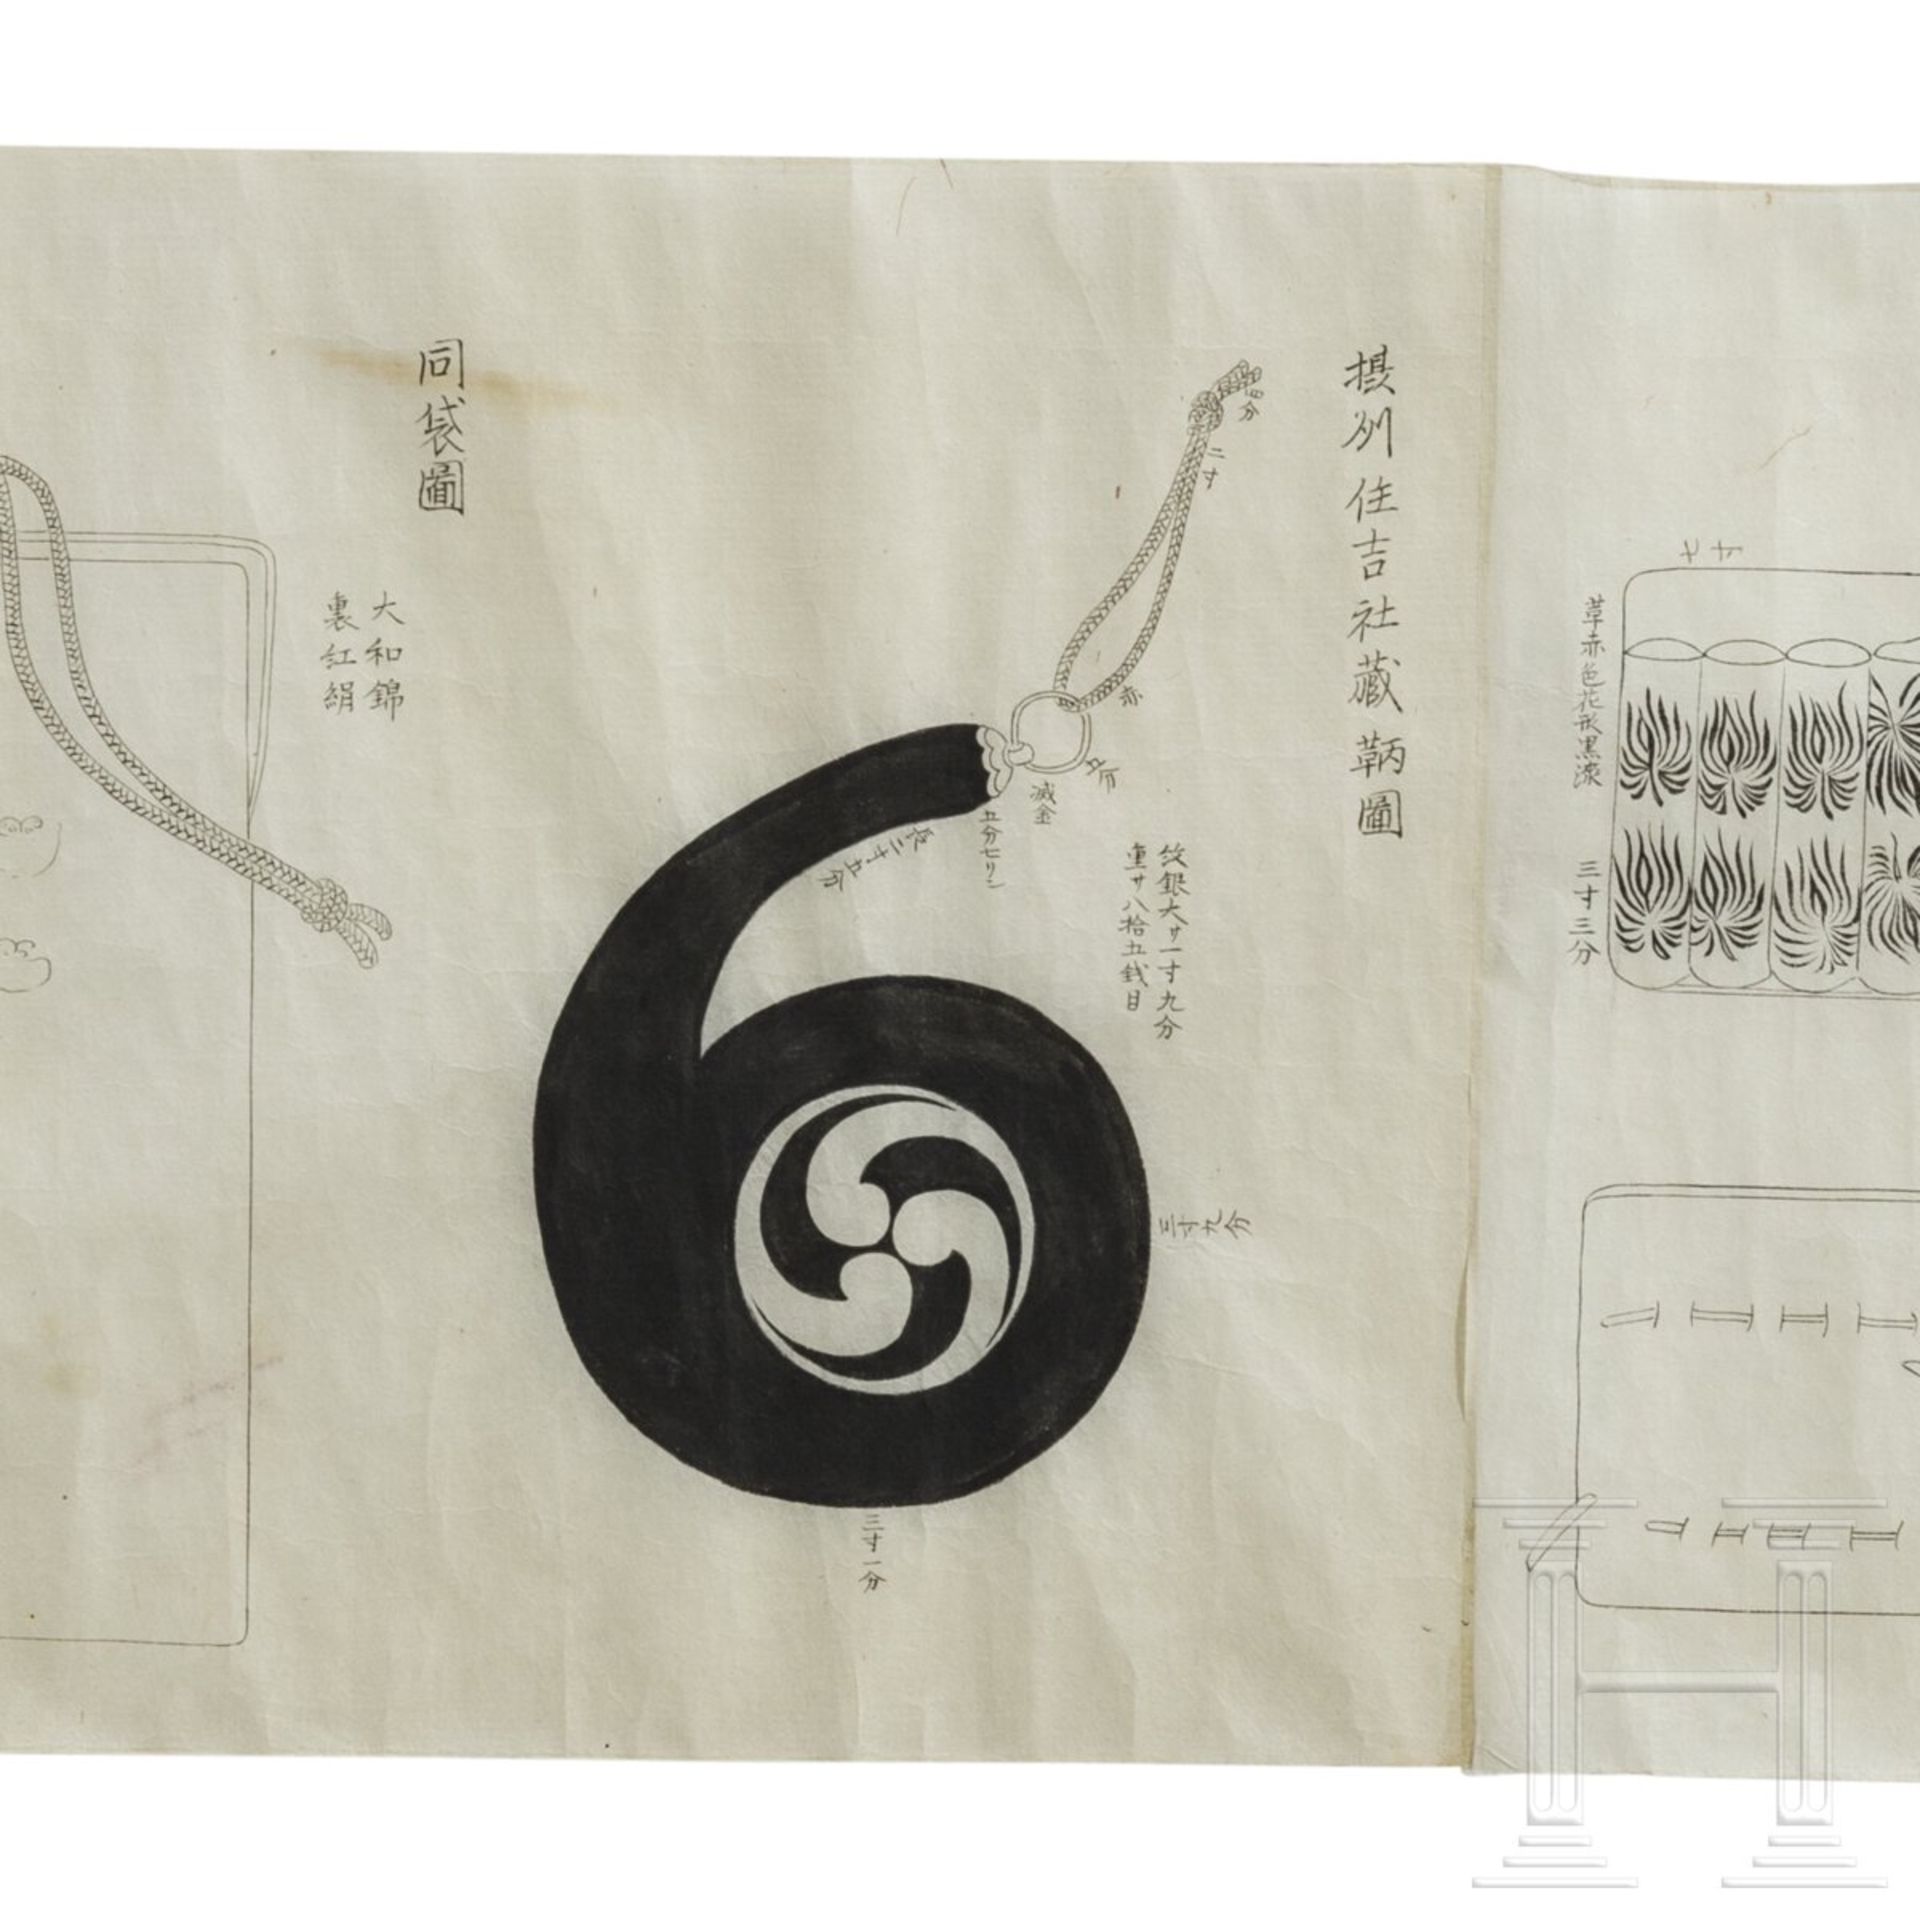 Bildrolle zum Thema Bogenschießen, Japan, Ende Edo-Periode - Bild 9 aus 9